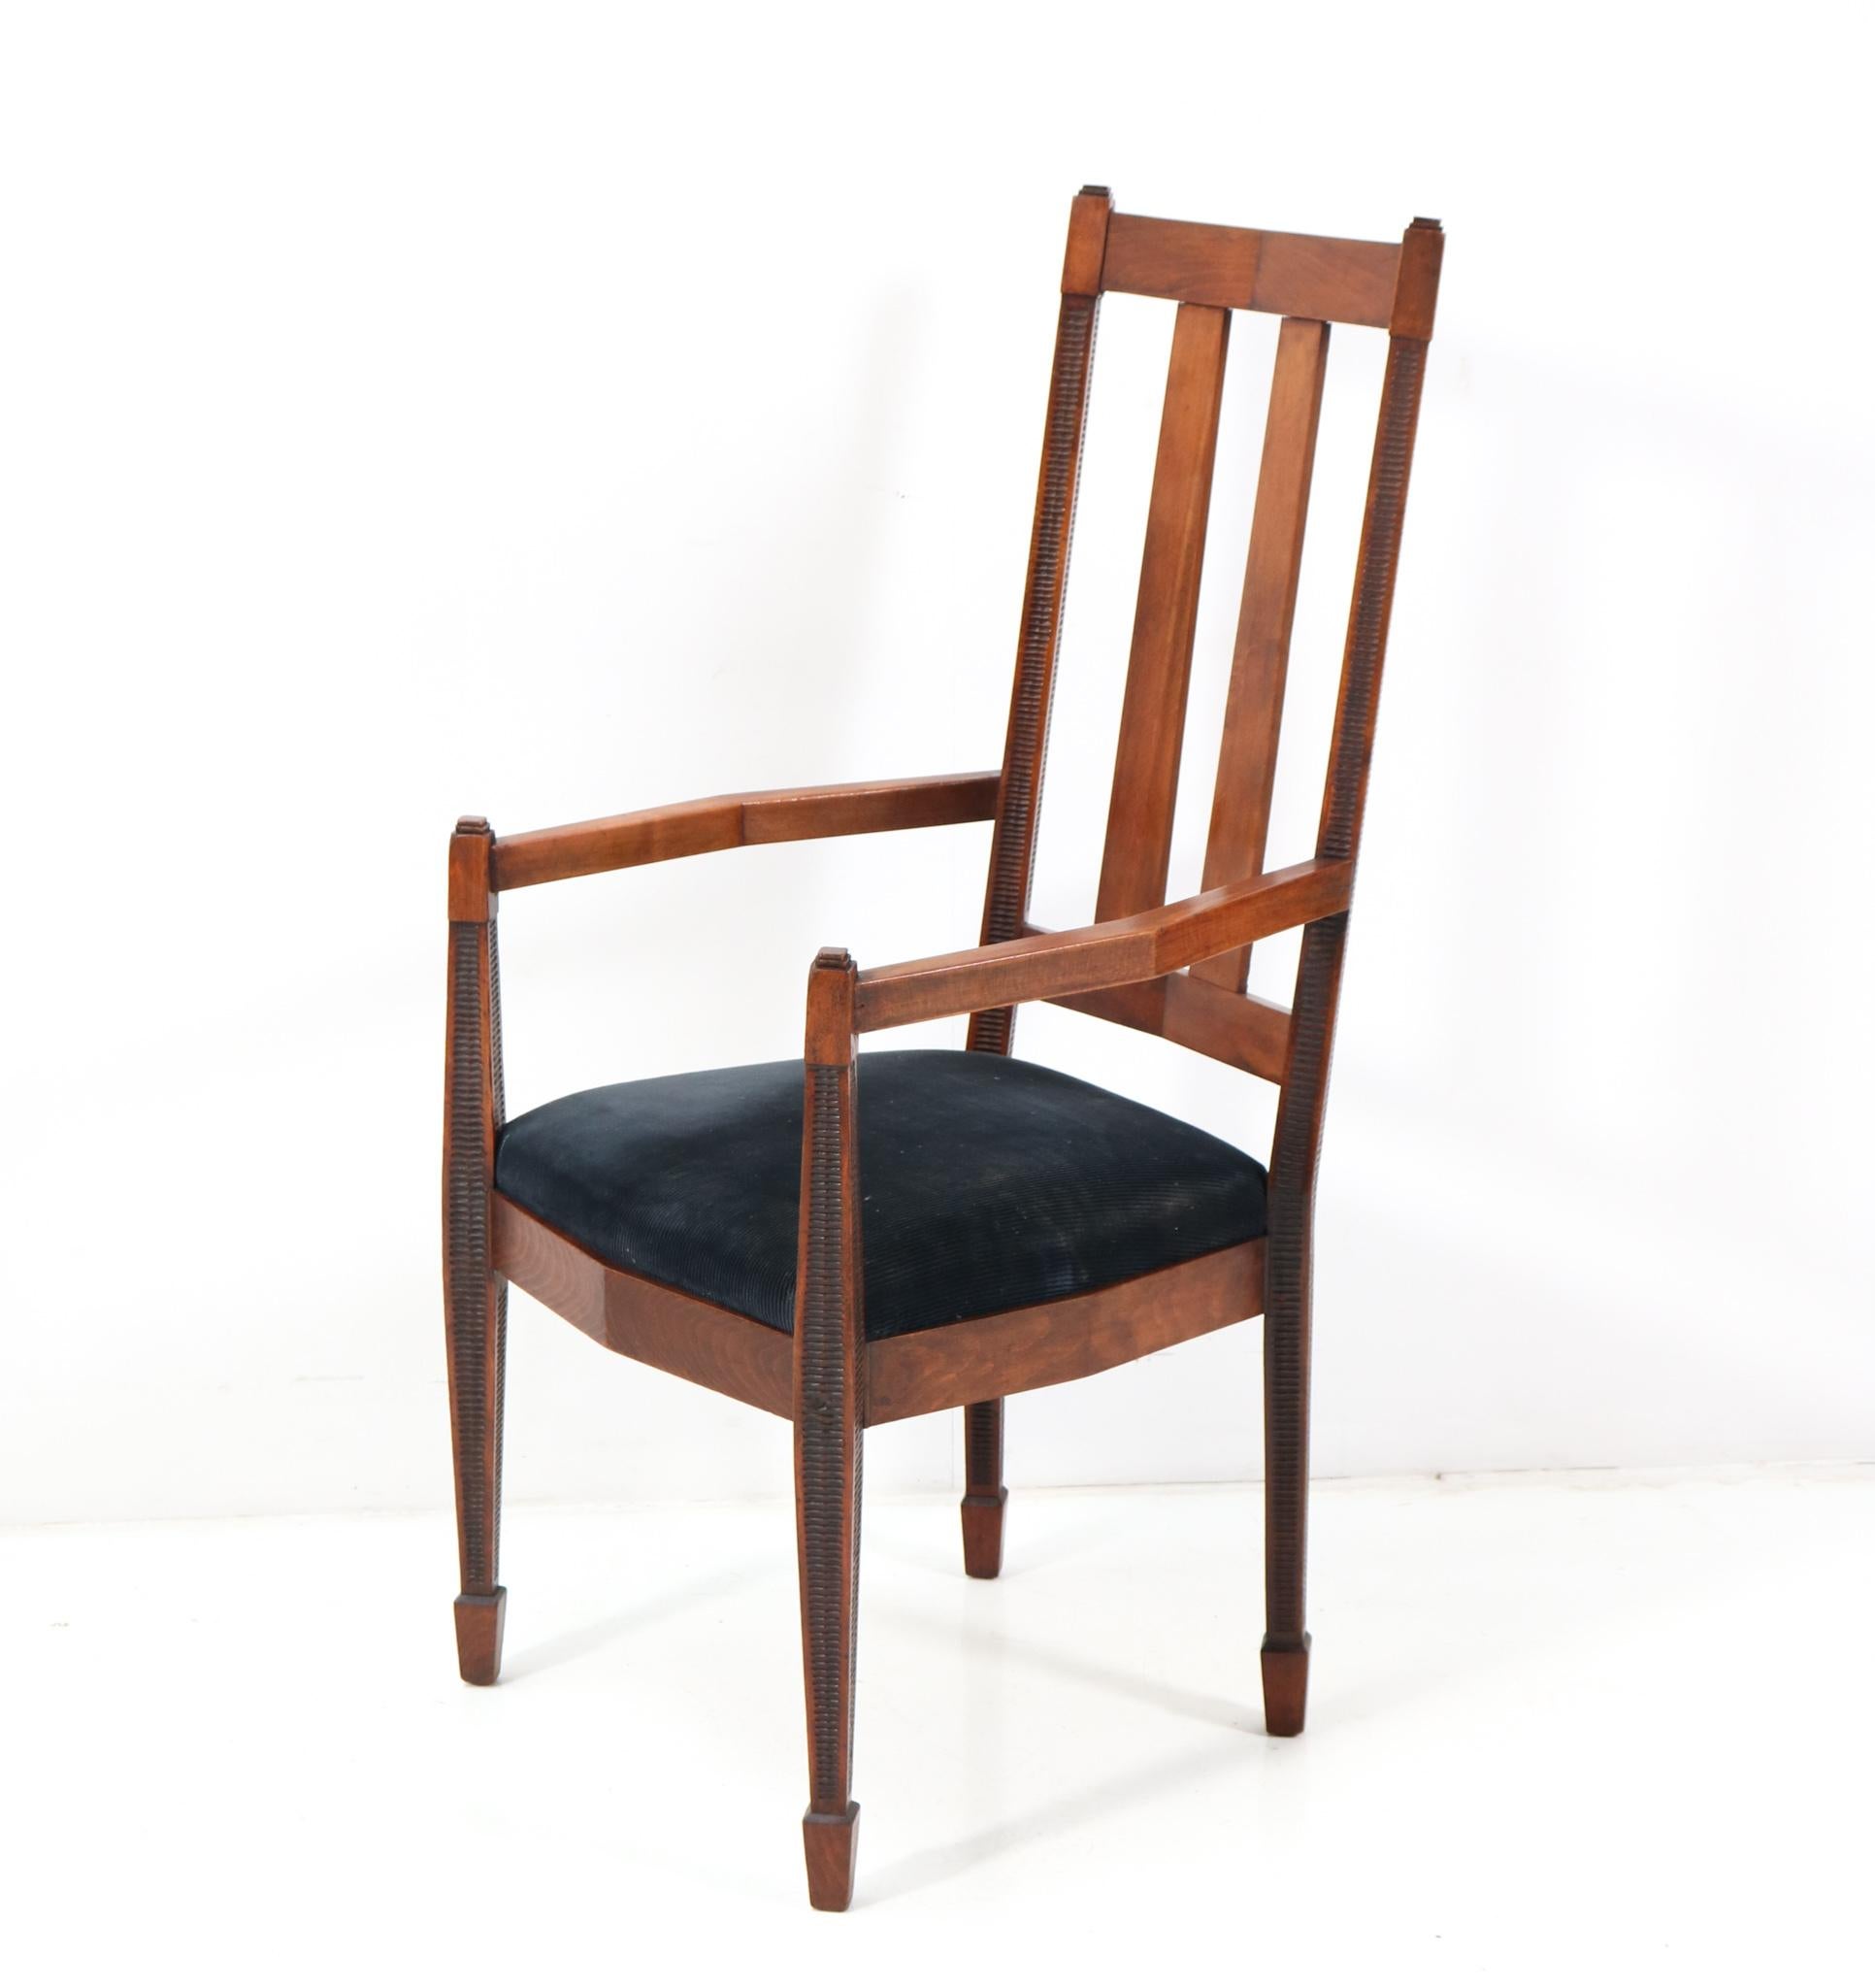 Prächtiger und seltener Satz von fünf Art Deco Amsterdamse School Esszimmerstühlen und einem passenden Sessel.
Auffälliges niederländisches Design aus den 1920er Jahren.
Rahmen aus massiver gebeizter Buche mit schwarzem Manchester-Cord-Stoff.
Dieser